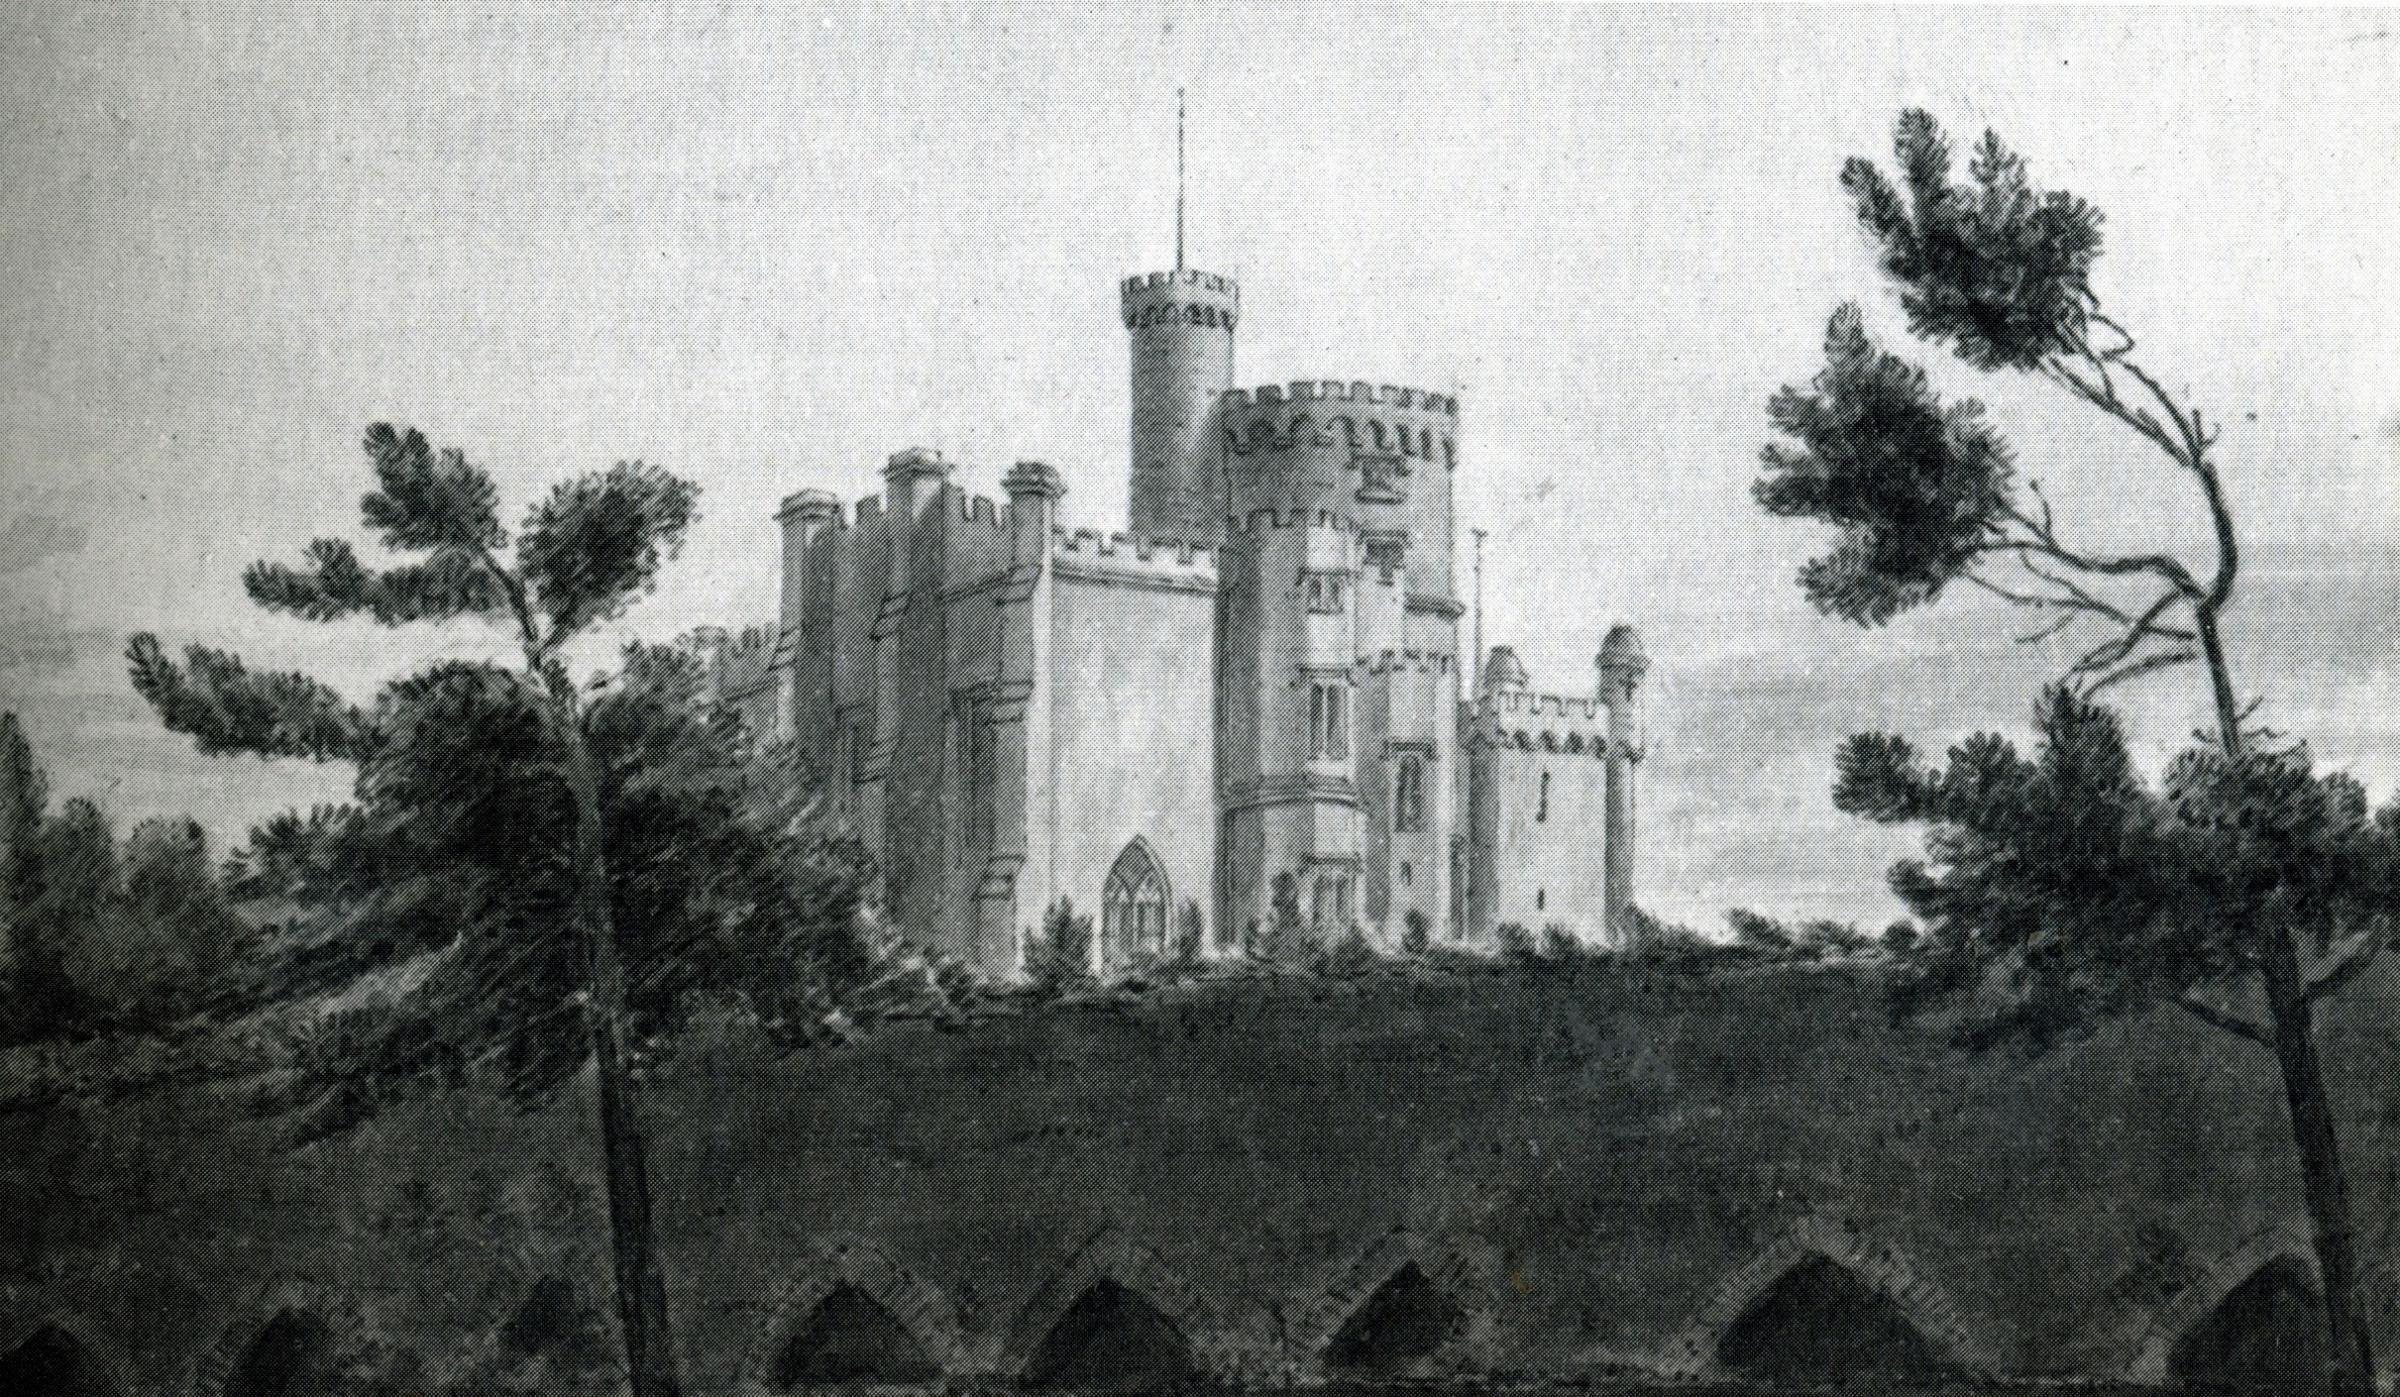 Southampton Castle